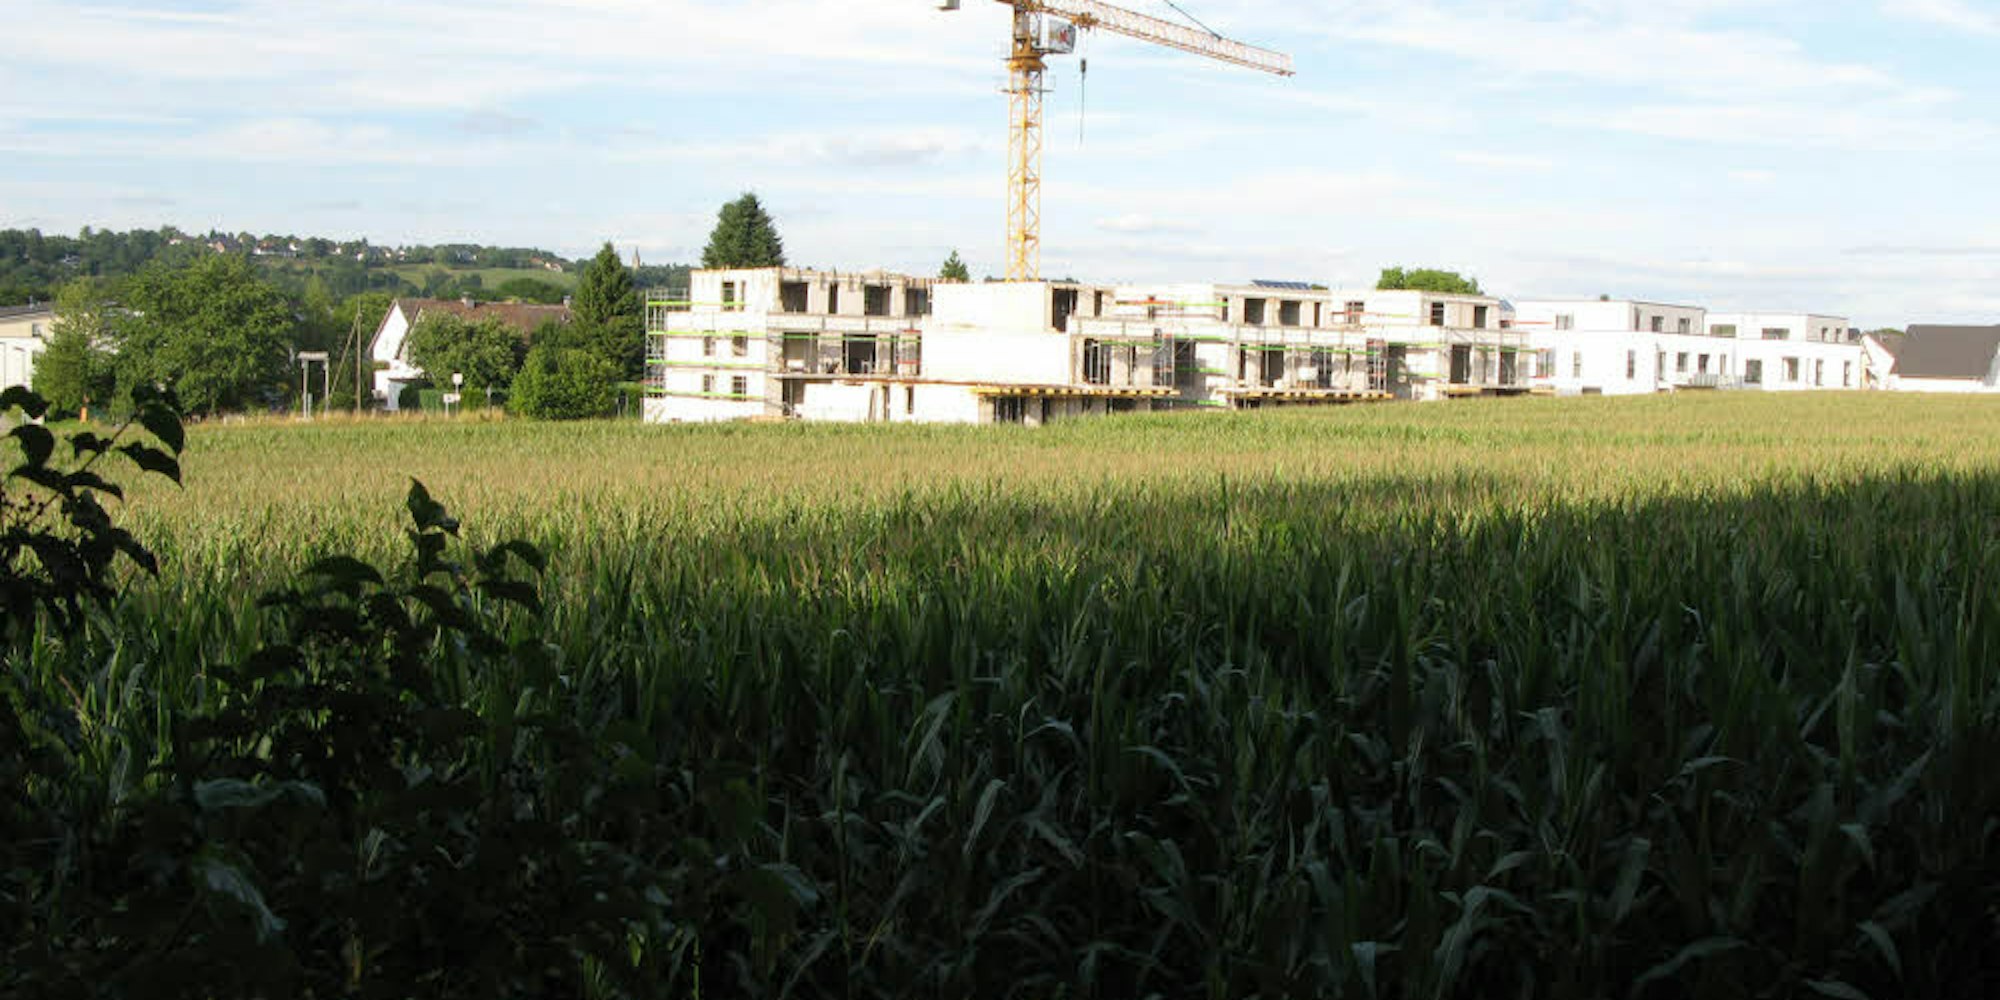 An der Blankenberger Straße werden derzeit diese Neubauten hochgezogen. Auf den noch landwirtschaftlich genutzten Flächen sollen unter anderem 40 Doppelhaushälften entstehen.